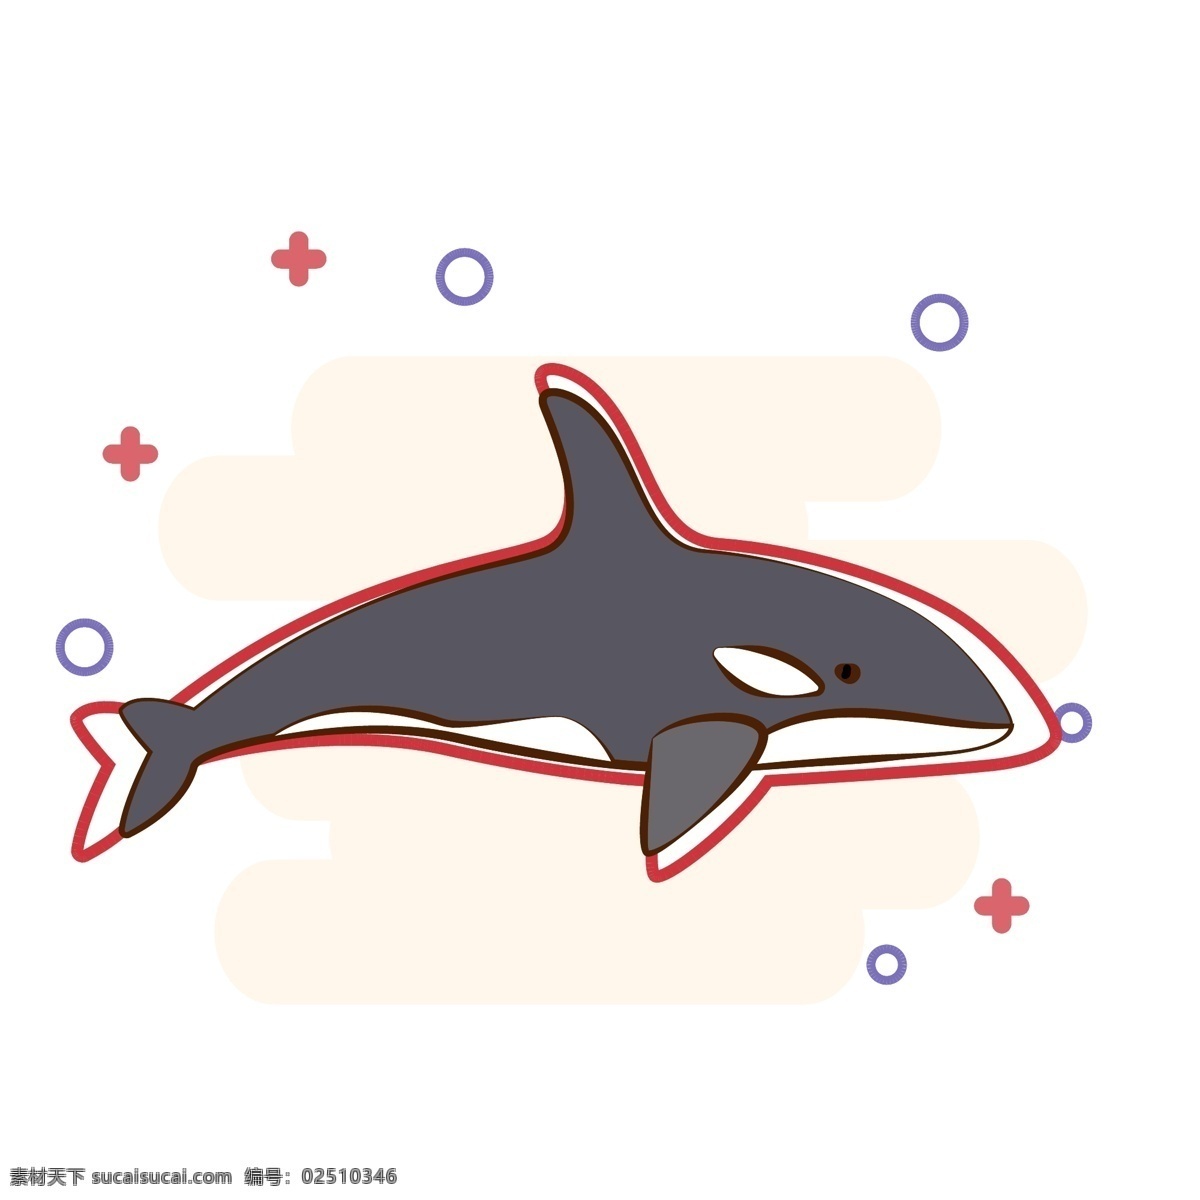 原创 矢量 卡通 虎 鲸 商用 海洋生物 虎鲸 大型动物 可爱